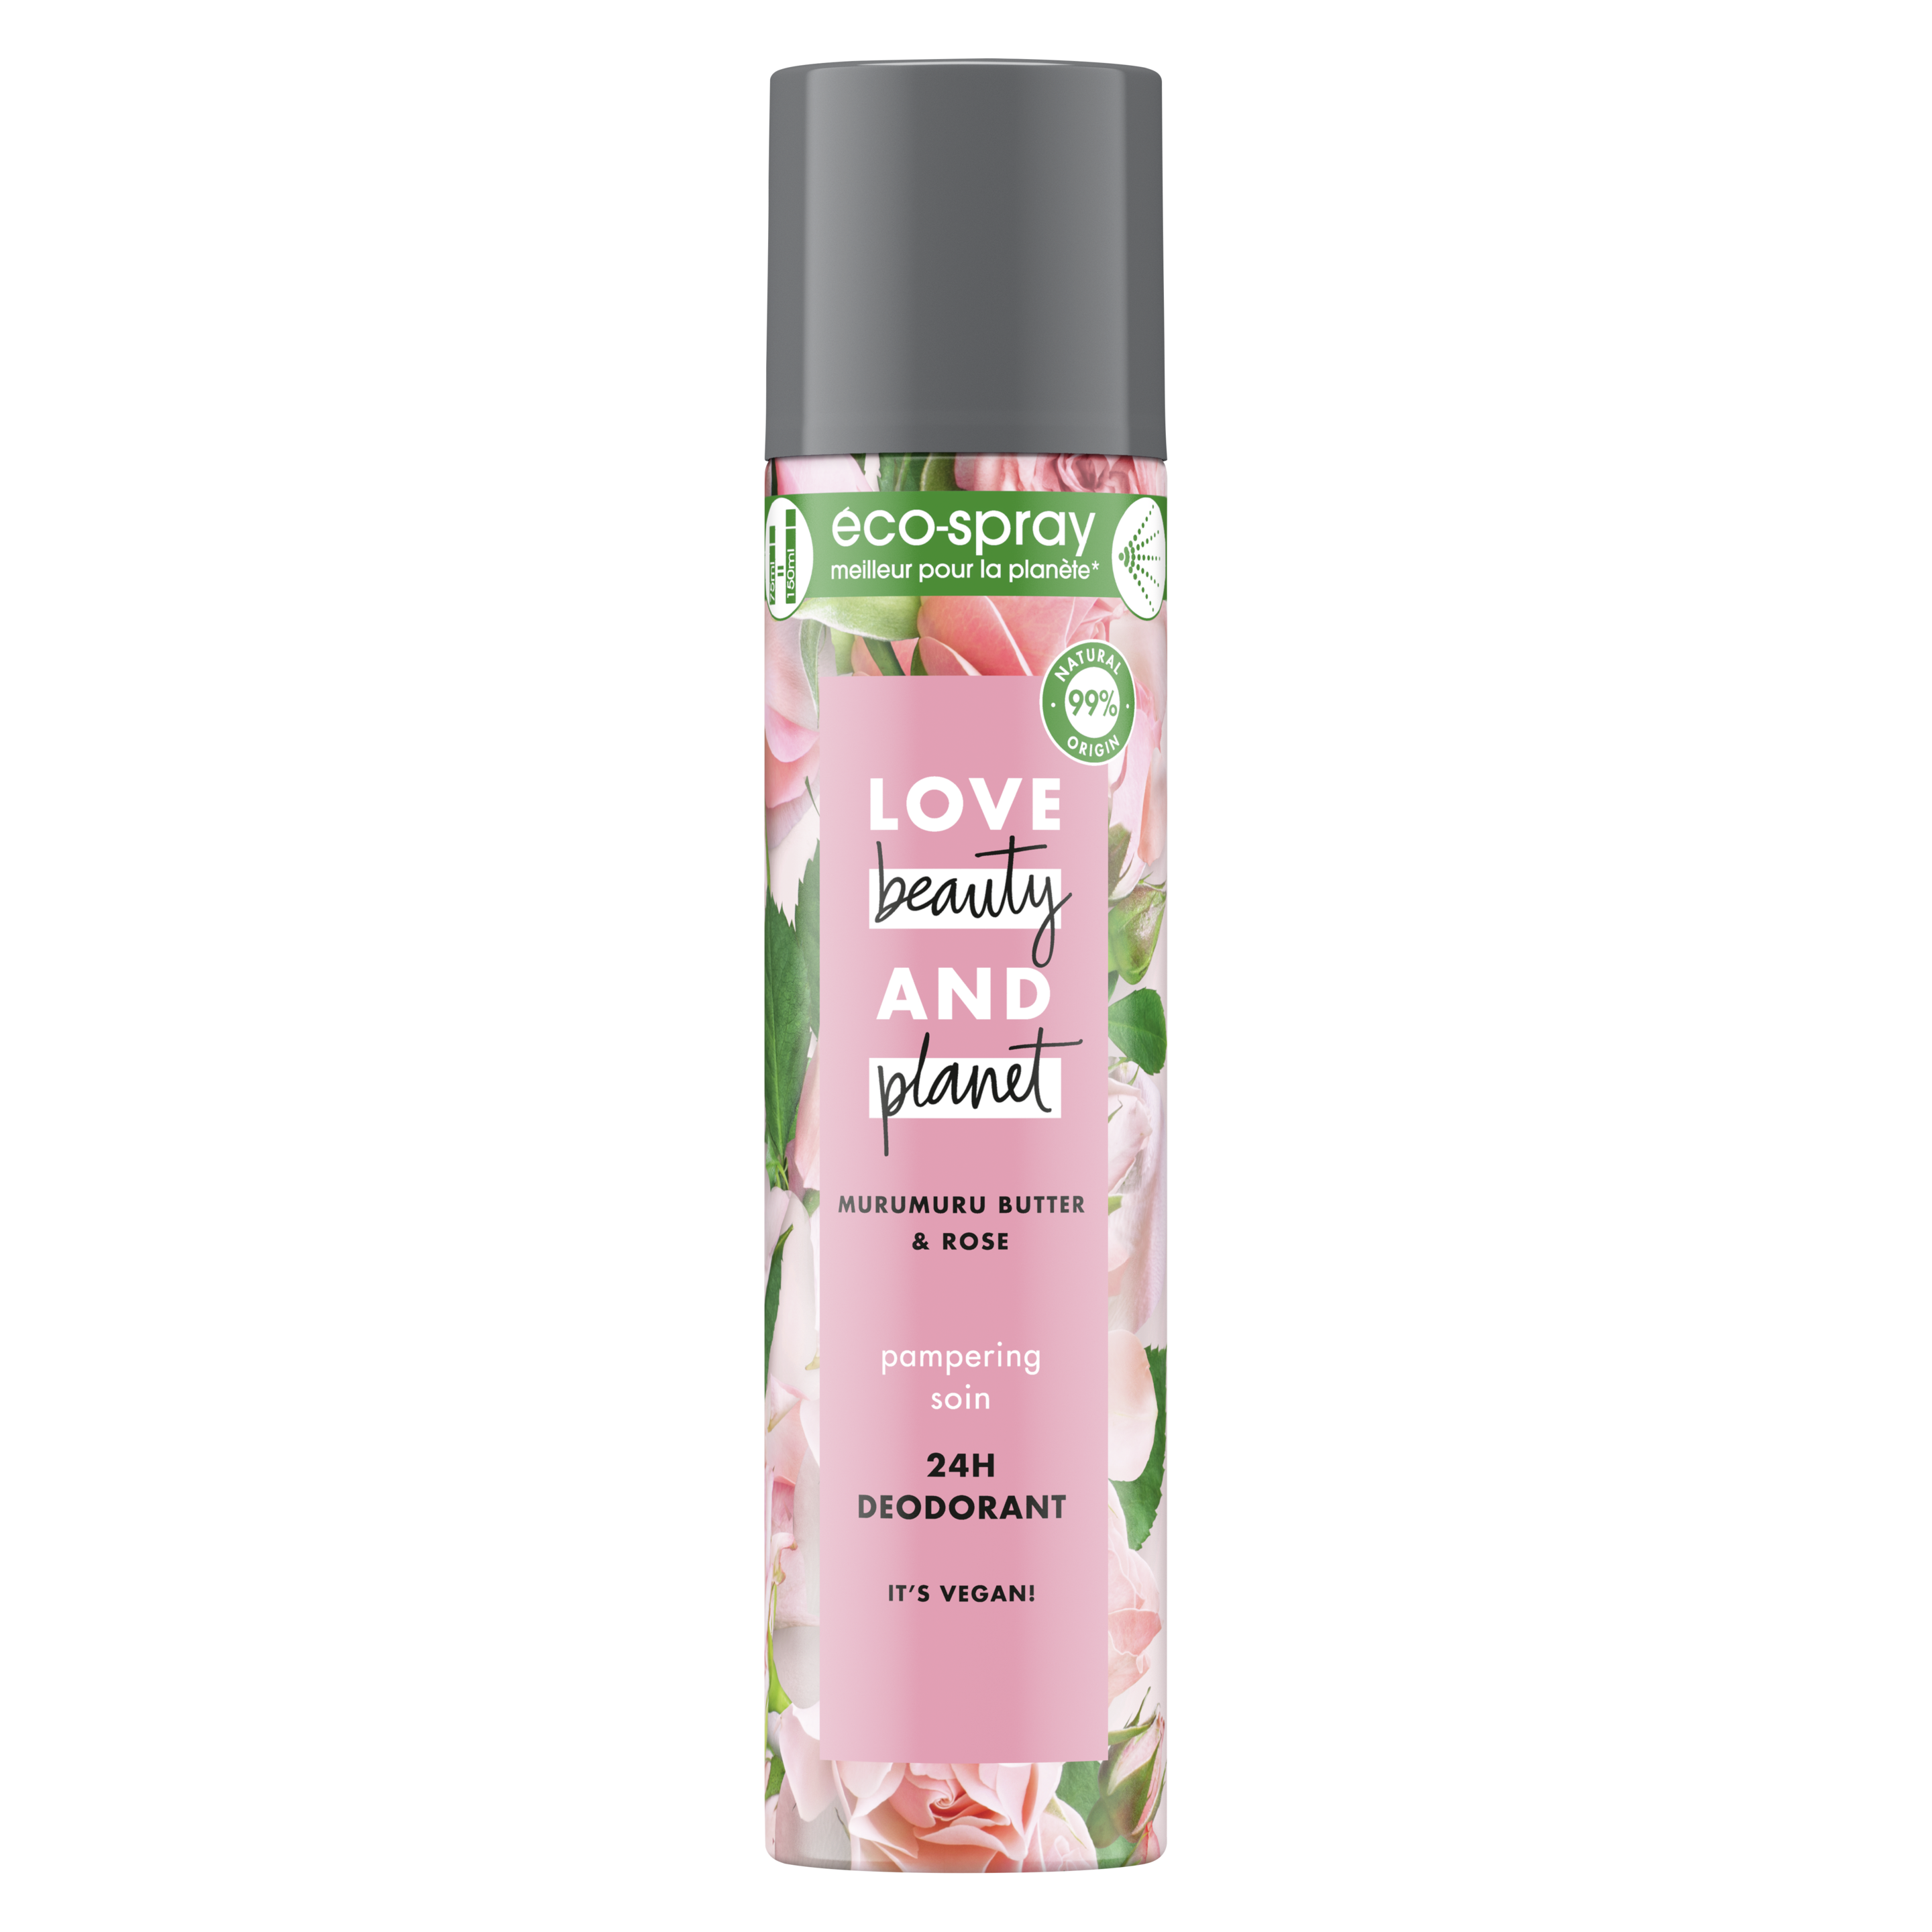 Voorkant verpakking Love Beauty and Planet Muru Muru Butter & Rose Deodorant verrijkt met muru muru butter en rozenblaadjes Pampering Eco-spray